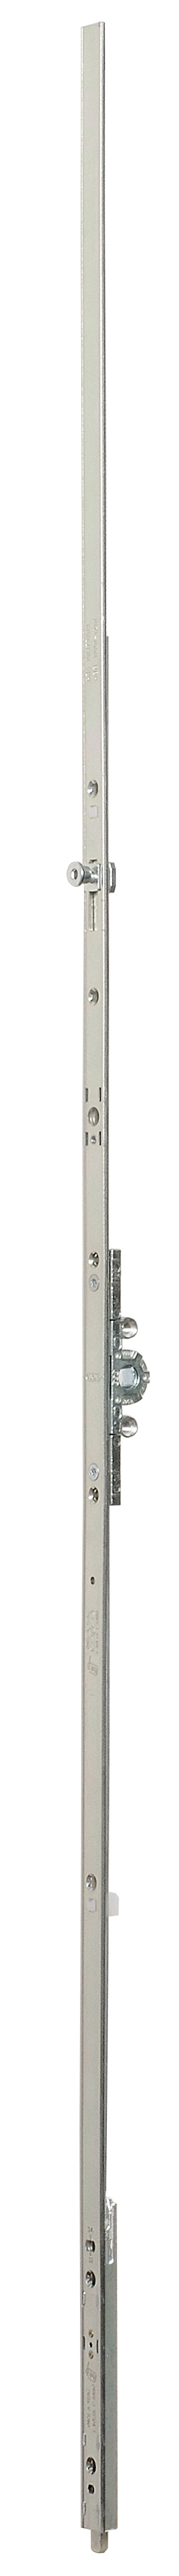 AGB -  Cremonese ARTECH anta a bandiera altezza maniglia fissa con puntale chiusura ad espansione per seconda anta - gr / dim. 10 - entrata 15 - alt. man. 1050 - lbb/hbb 2200 - 2510